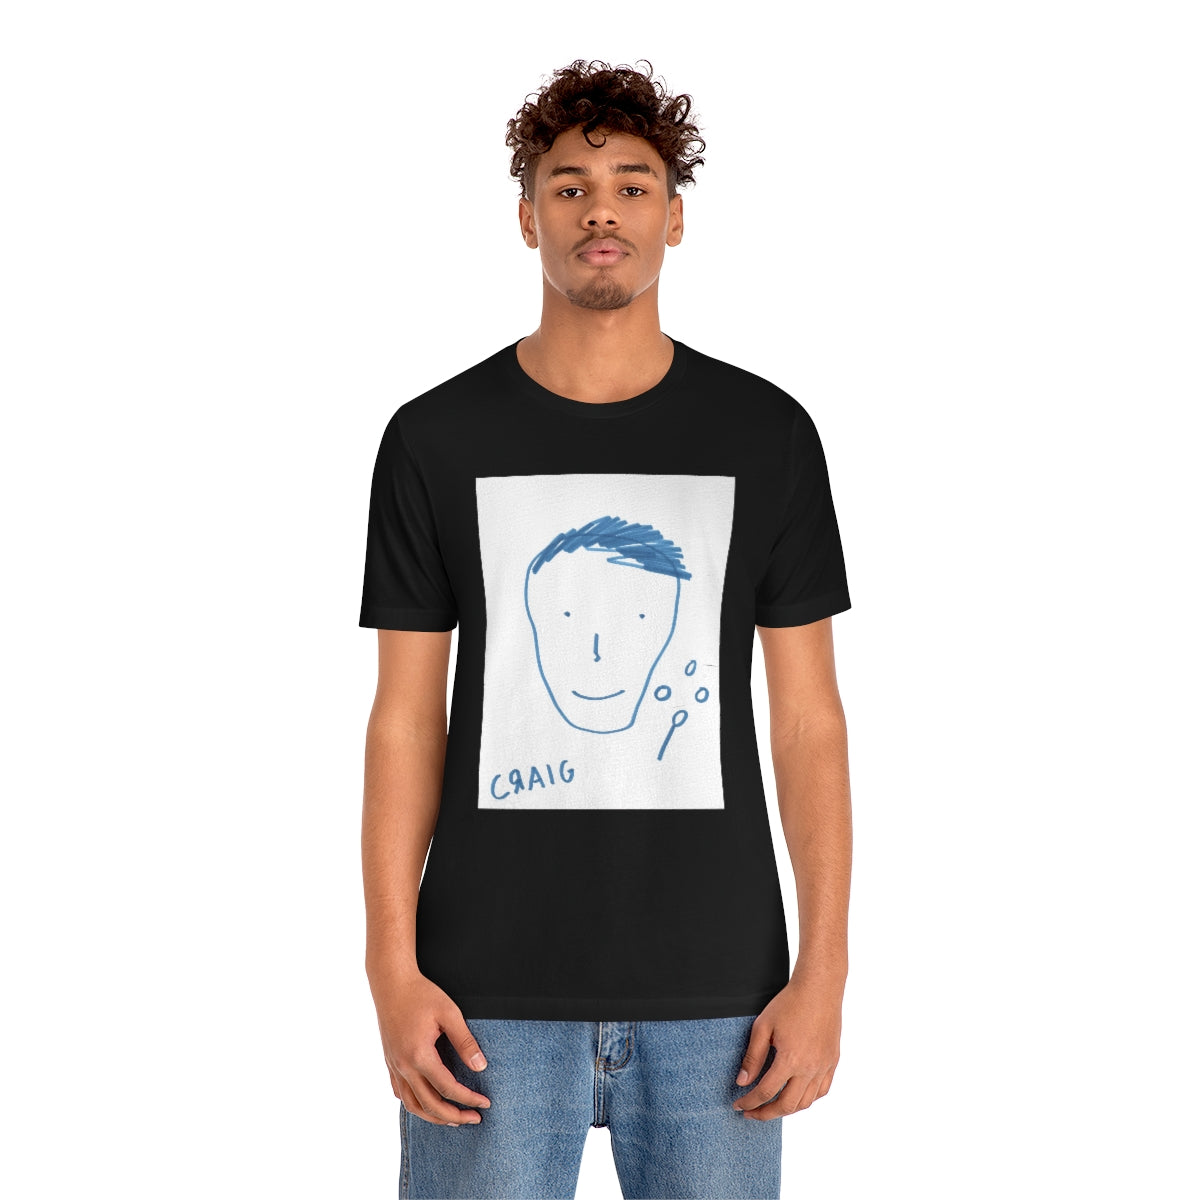 craig's self portrait on paper Shirt (Unisex)